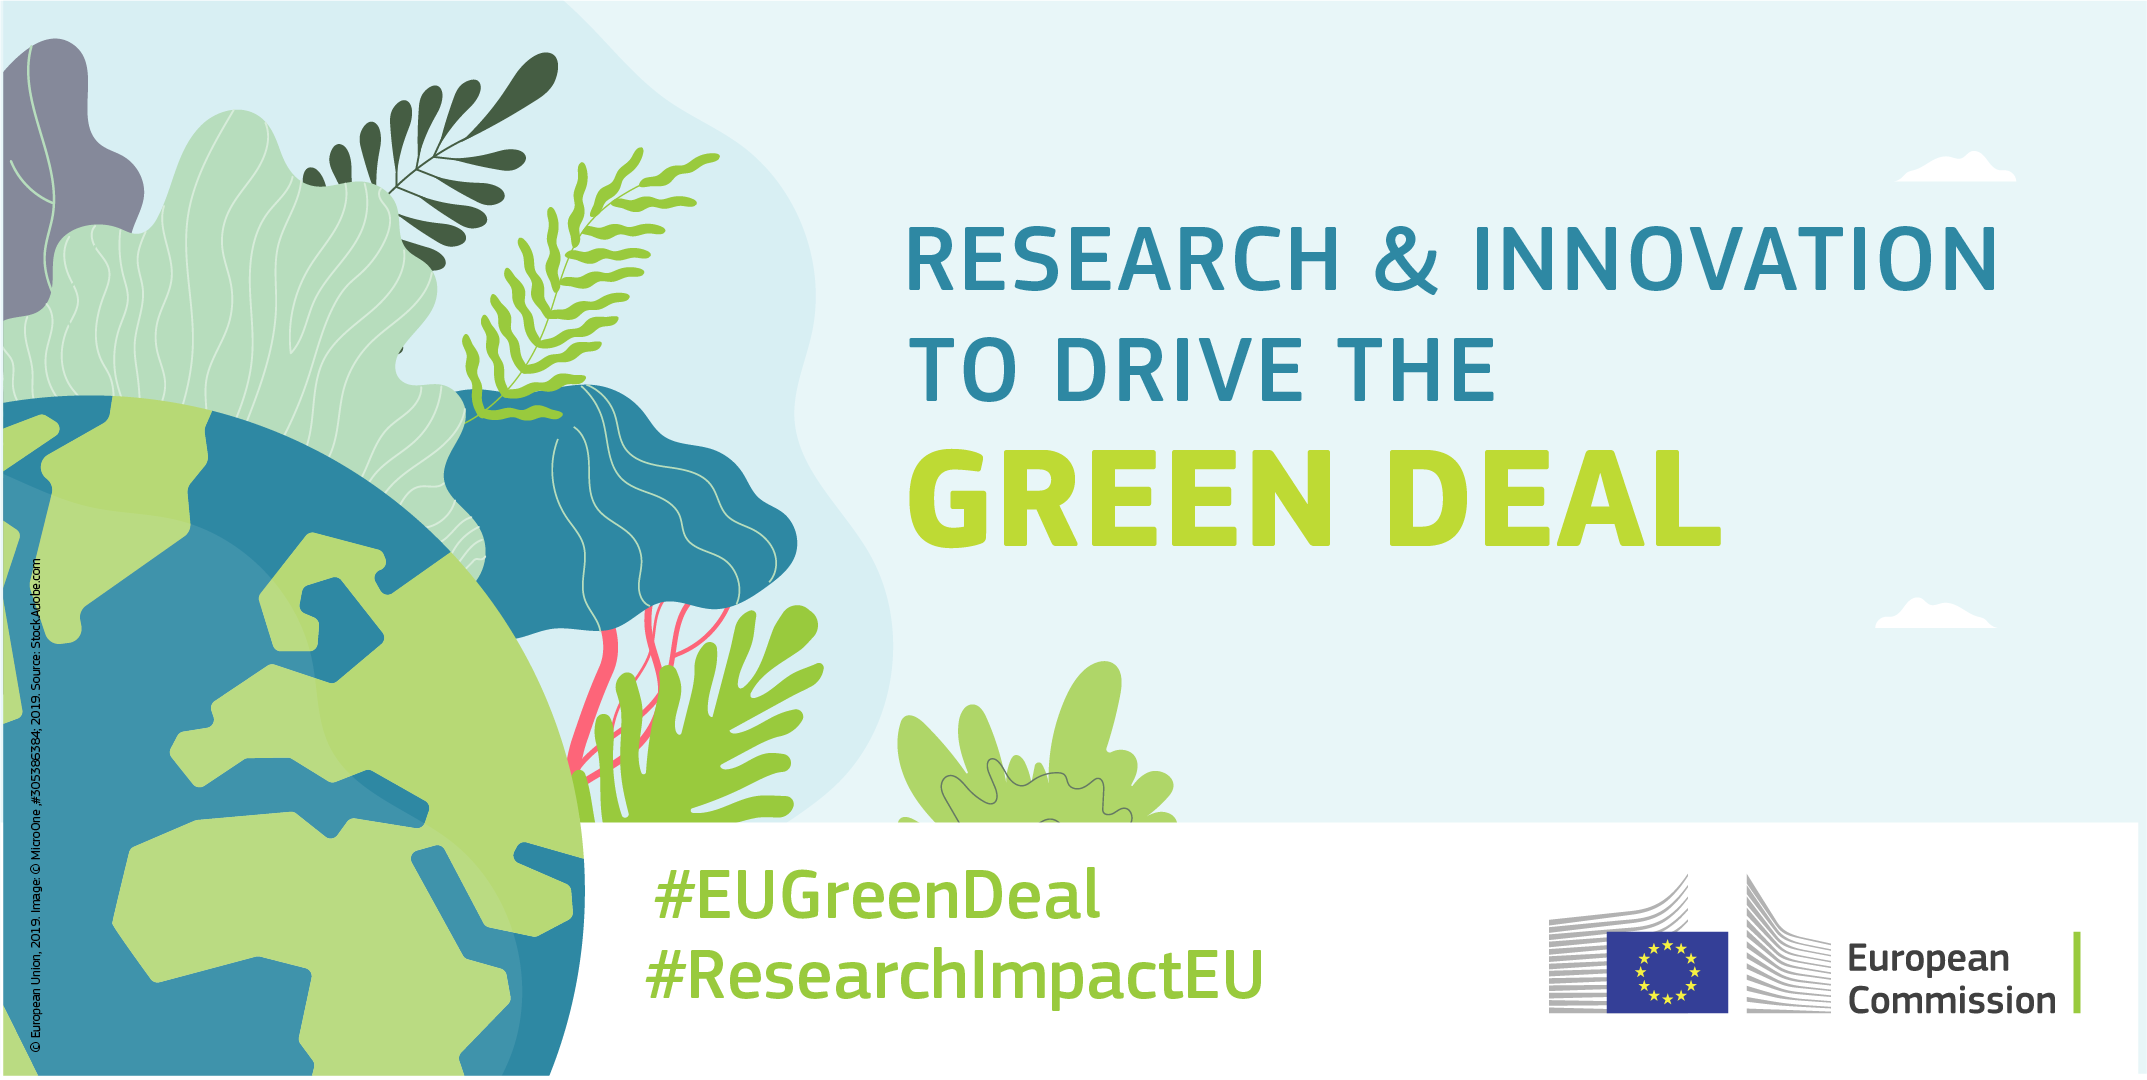 Bando di gara “Green Deal europeo”: nuovo impulso alla transizione verde e digitale